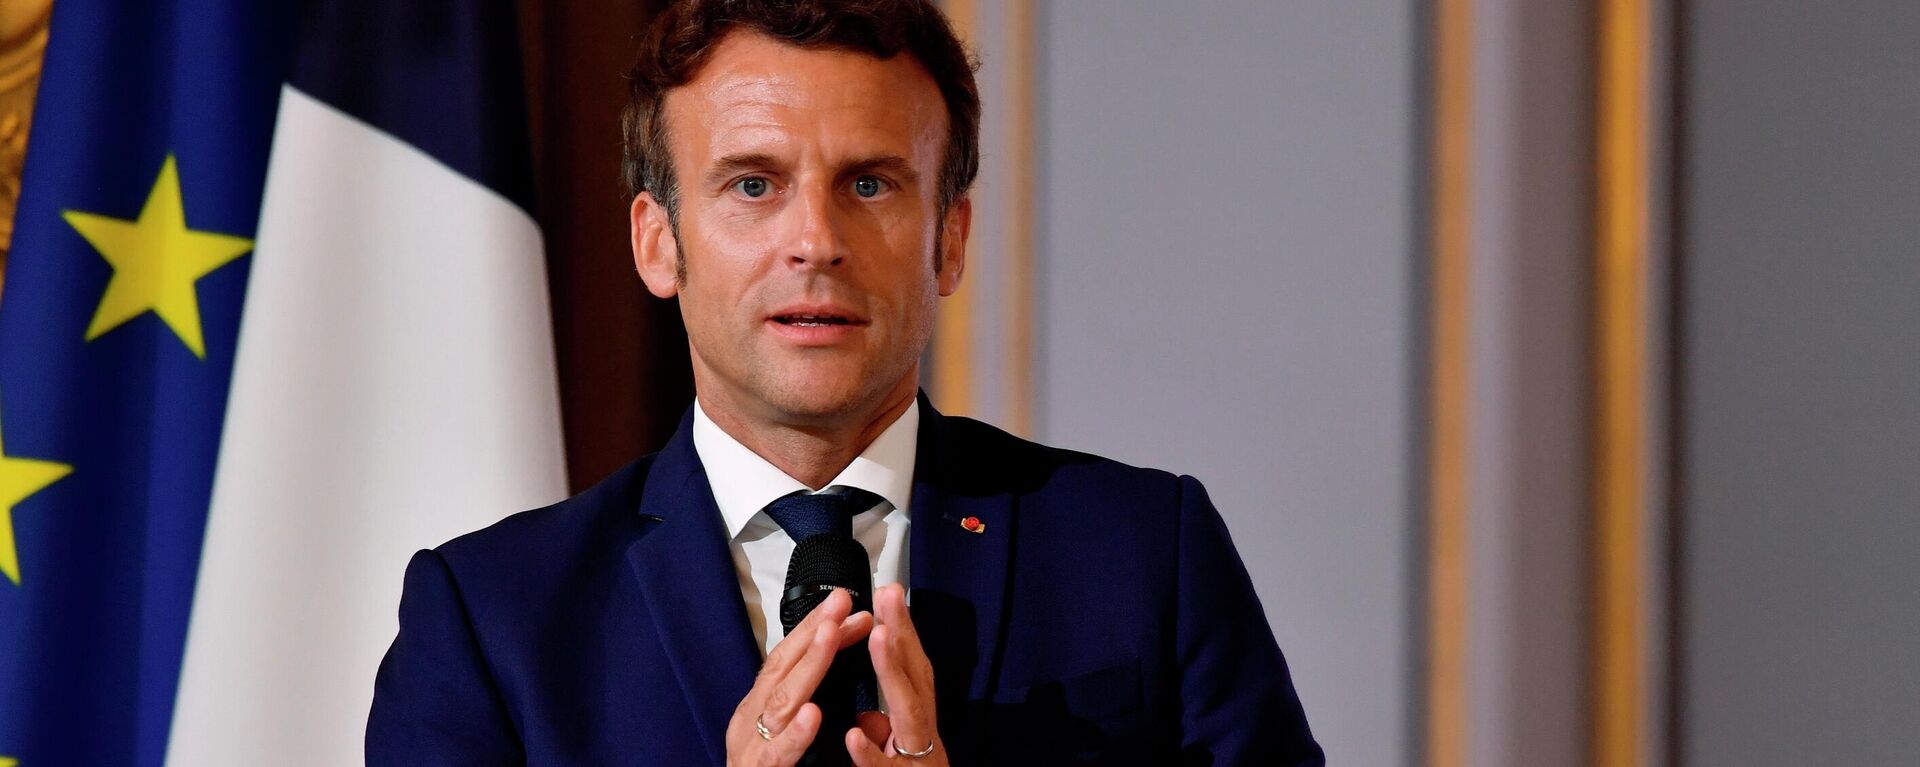 O presidente francês, Emmanuel Macron, participa de encontro no Palácio do Eliseu, em Paris, em 3 de junho de 2022 - Sputnik Brasil, 1920, 28.06.2022